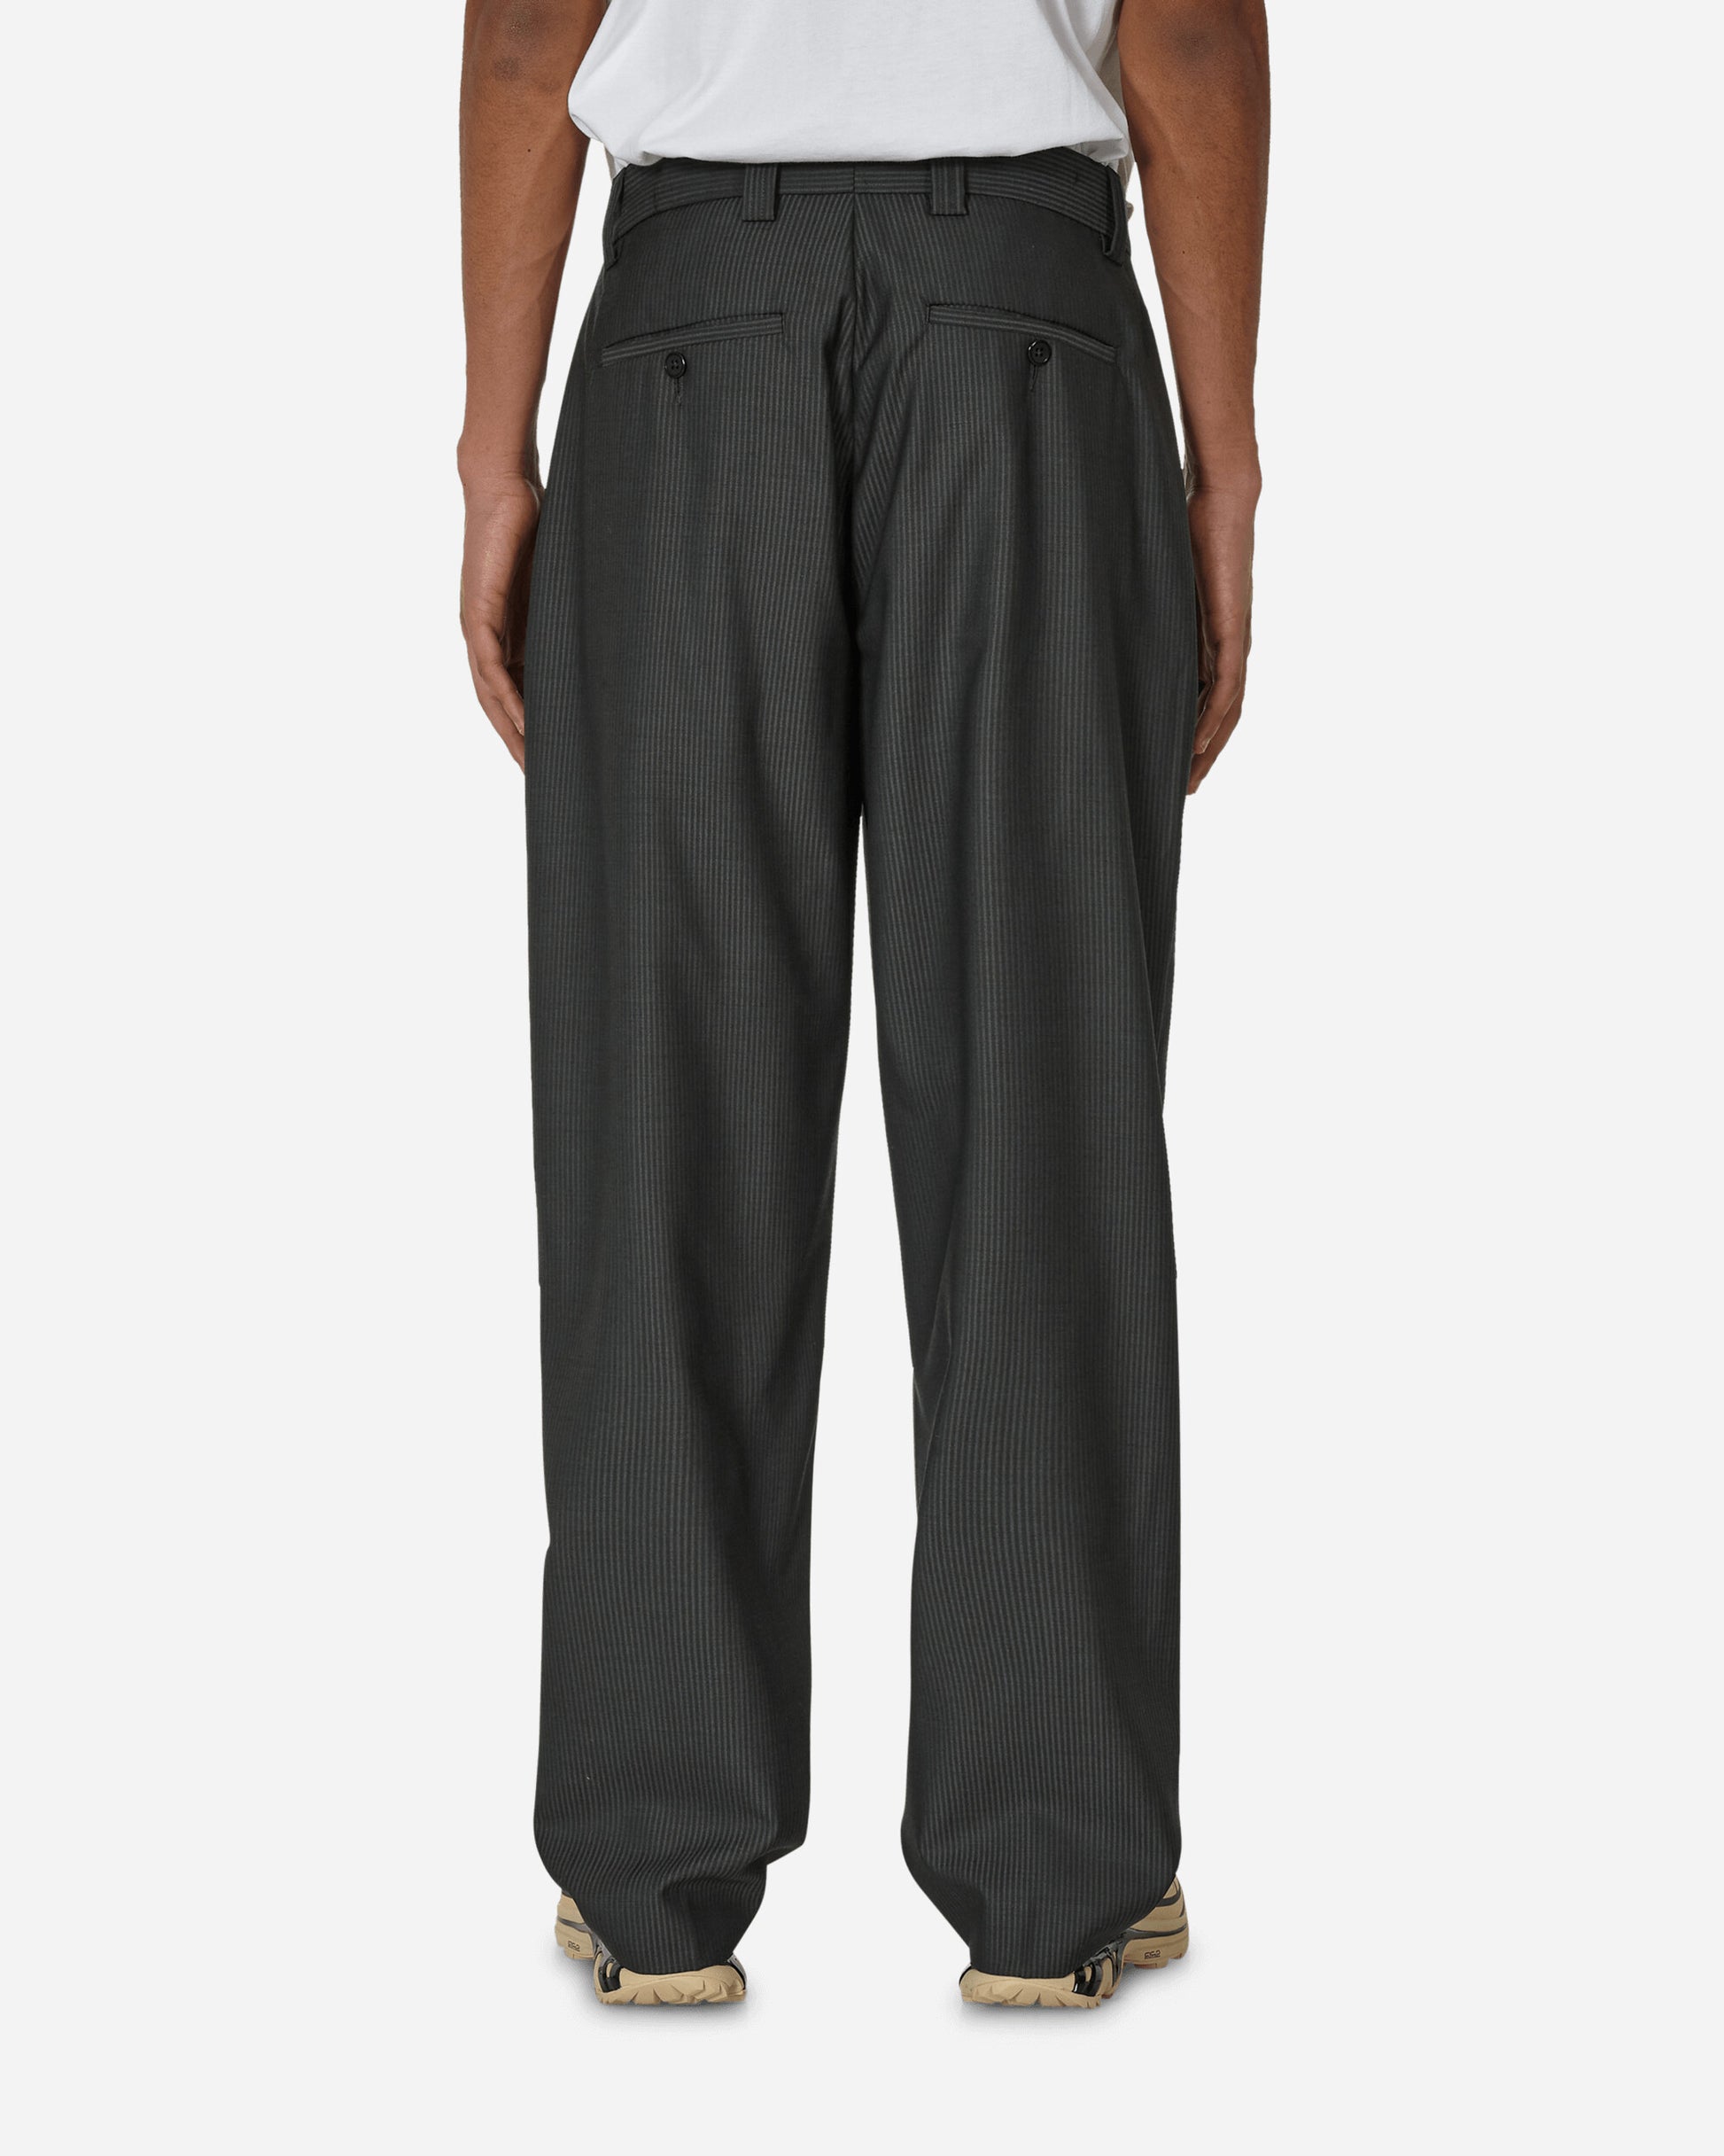 mfpen Studio Trousers Grey Stripe Pants Casual M124-41  1